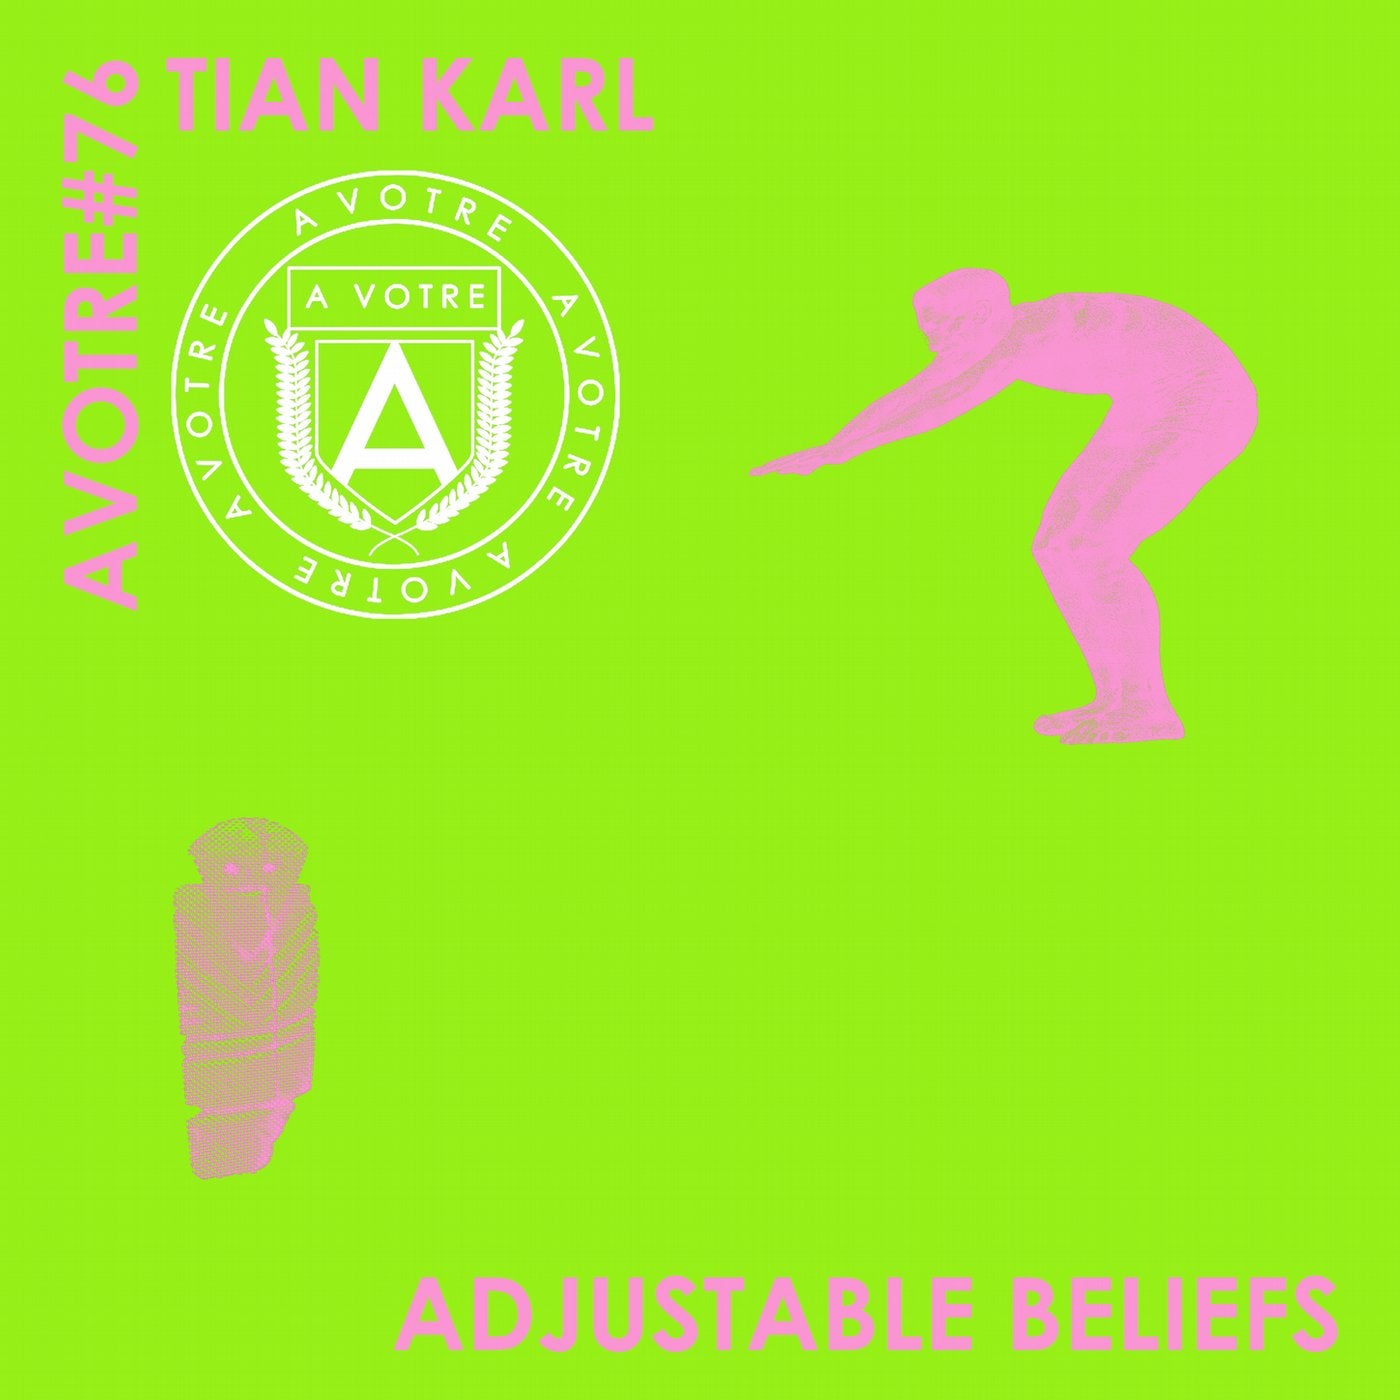 Adjustable Beliefs